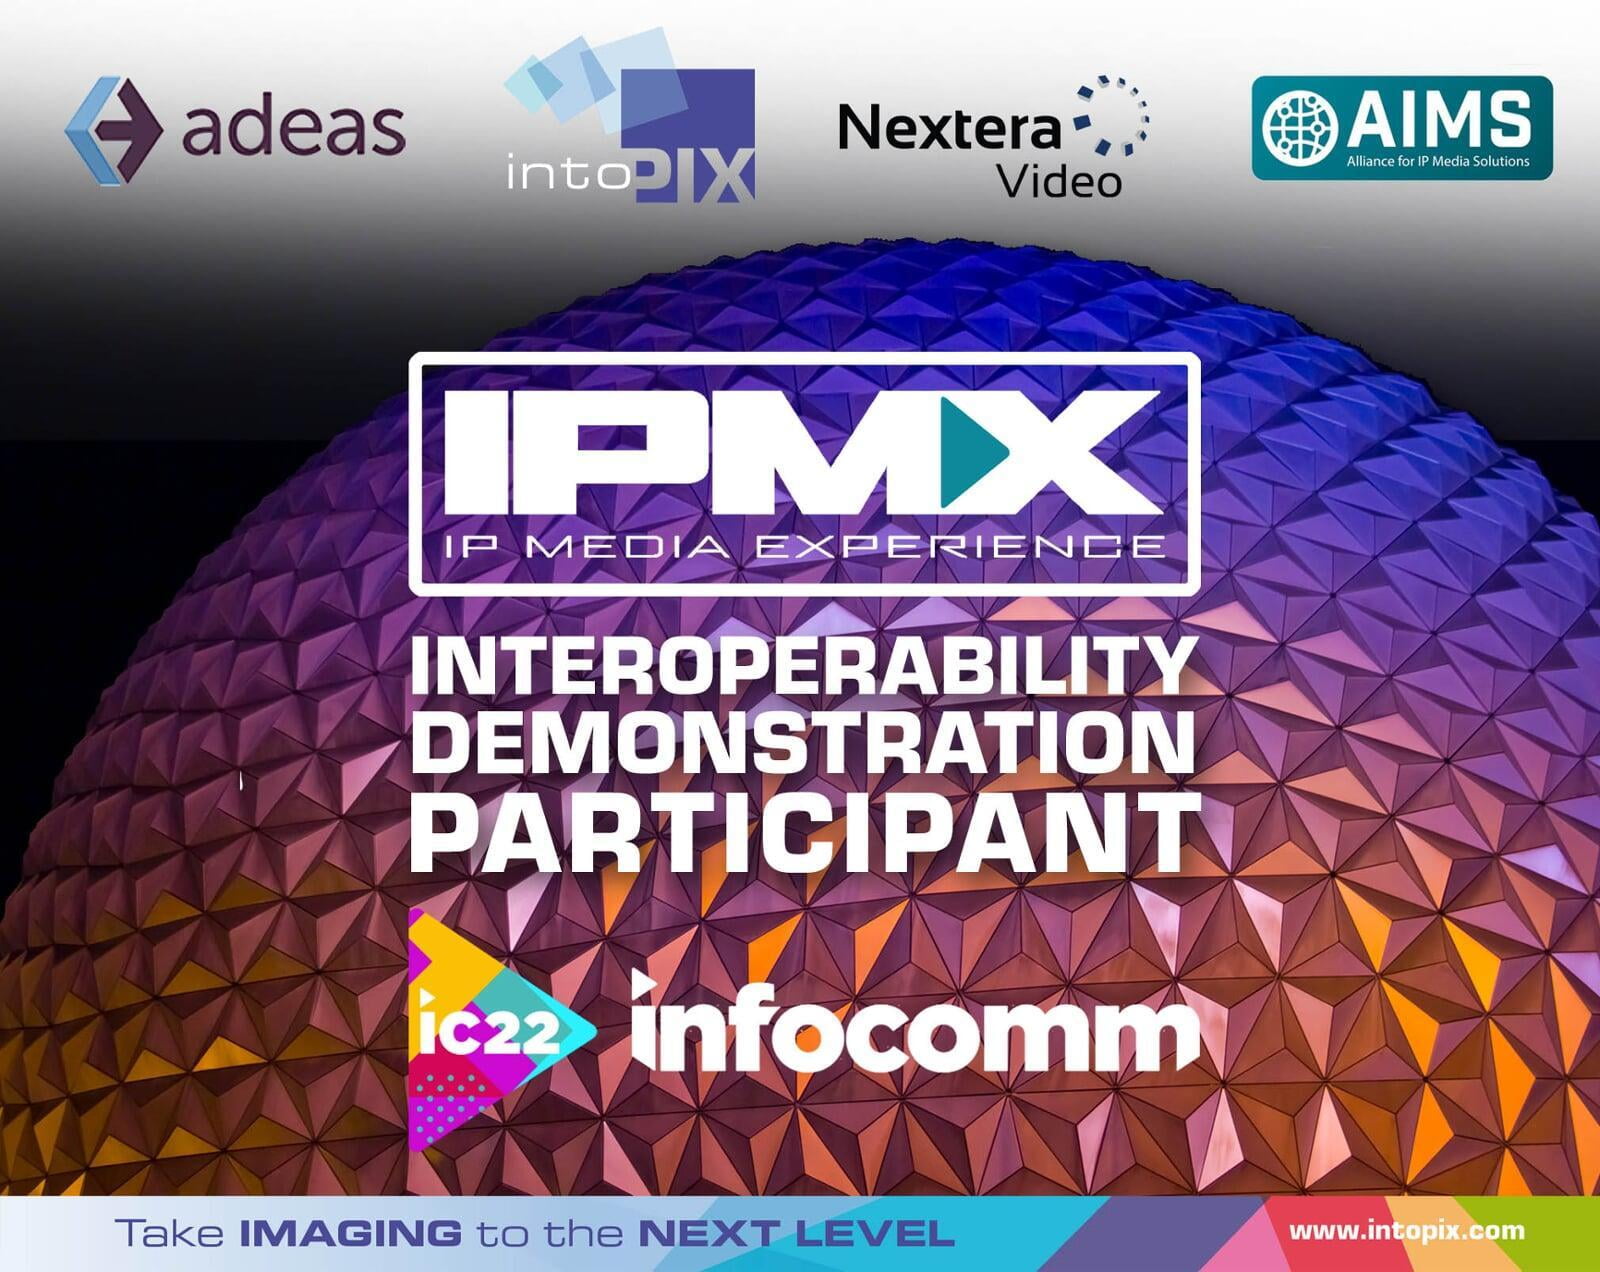 IntoPIXは、Nextera社およびAdeas社と提携し、InfoComm 2022でライブでのIPMXの相互運用性実証実験に参加